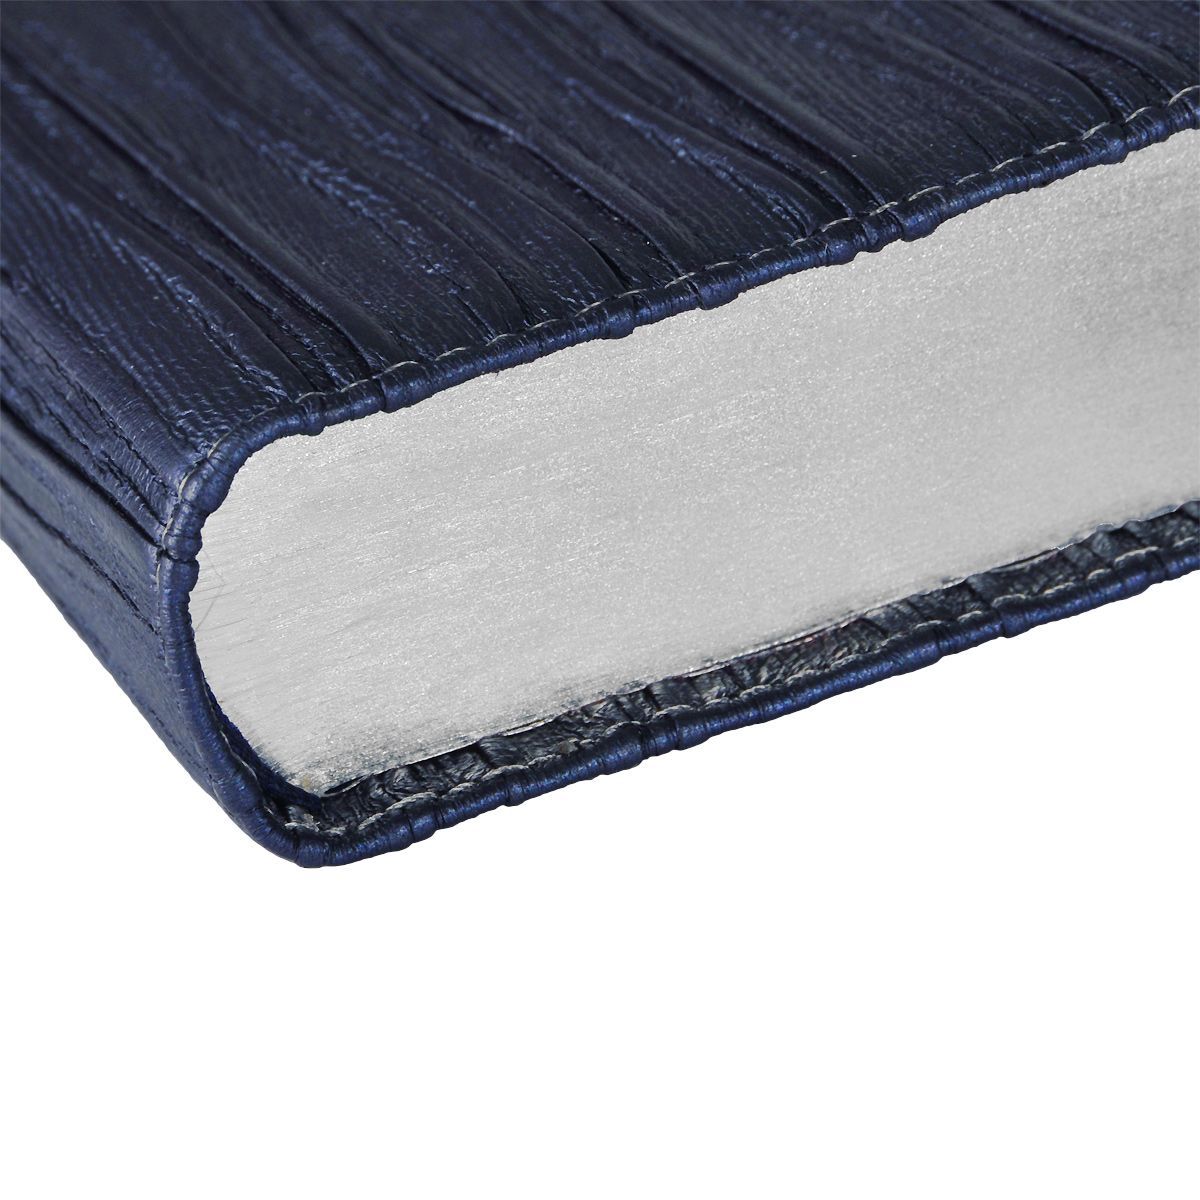 Библия 045DR тканевый переплет, фактура под водоросли, цвет темно-синий,  код 1301